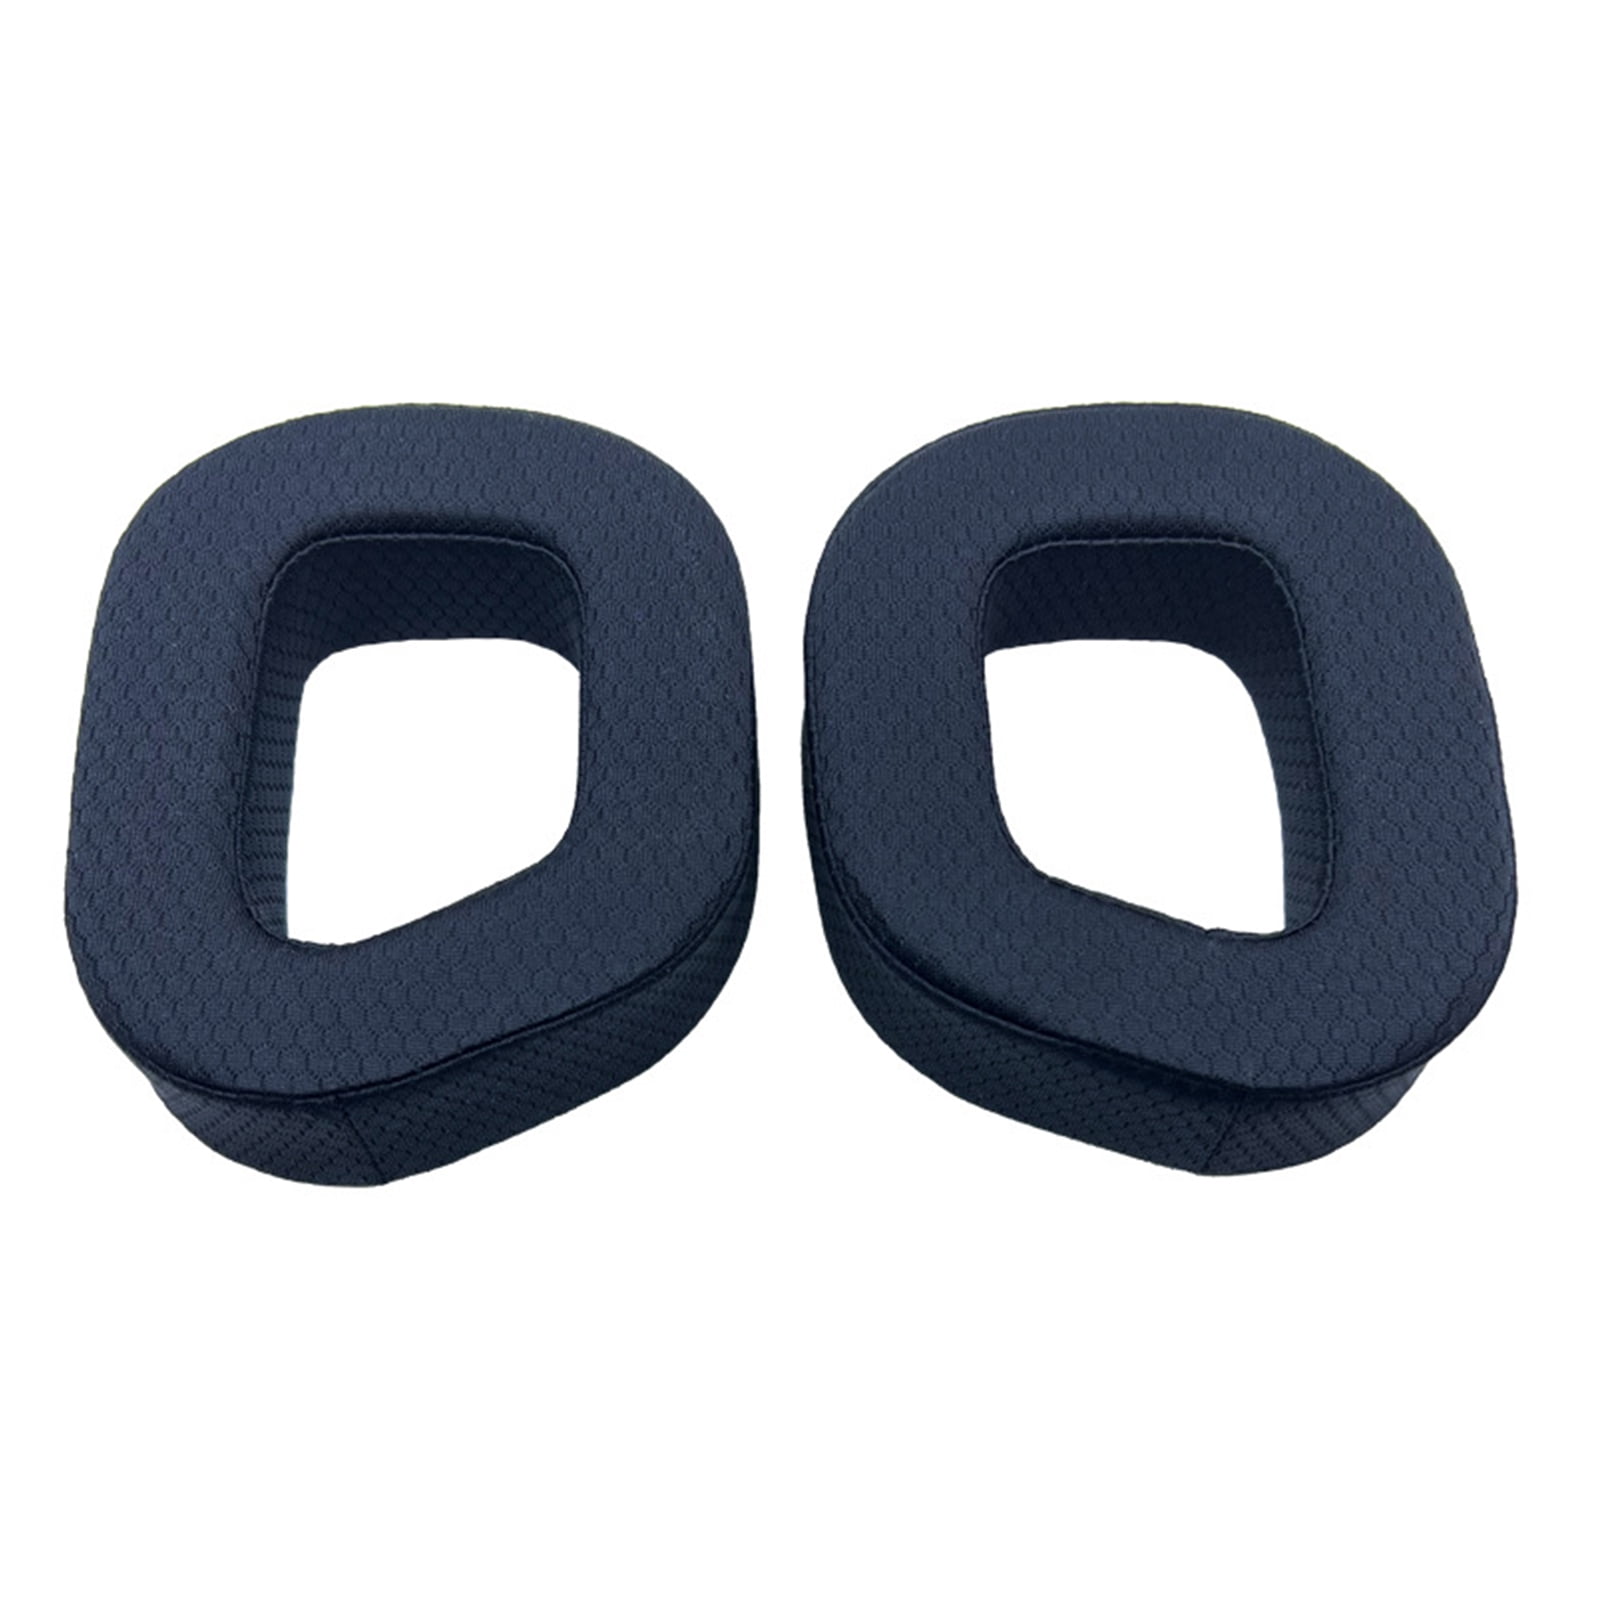 ✪ Ear Muffs Ear Cushion Repair Parts for CORSAIR HS80 RGB Headphone - Walmart.com